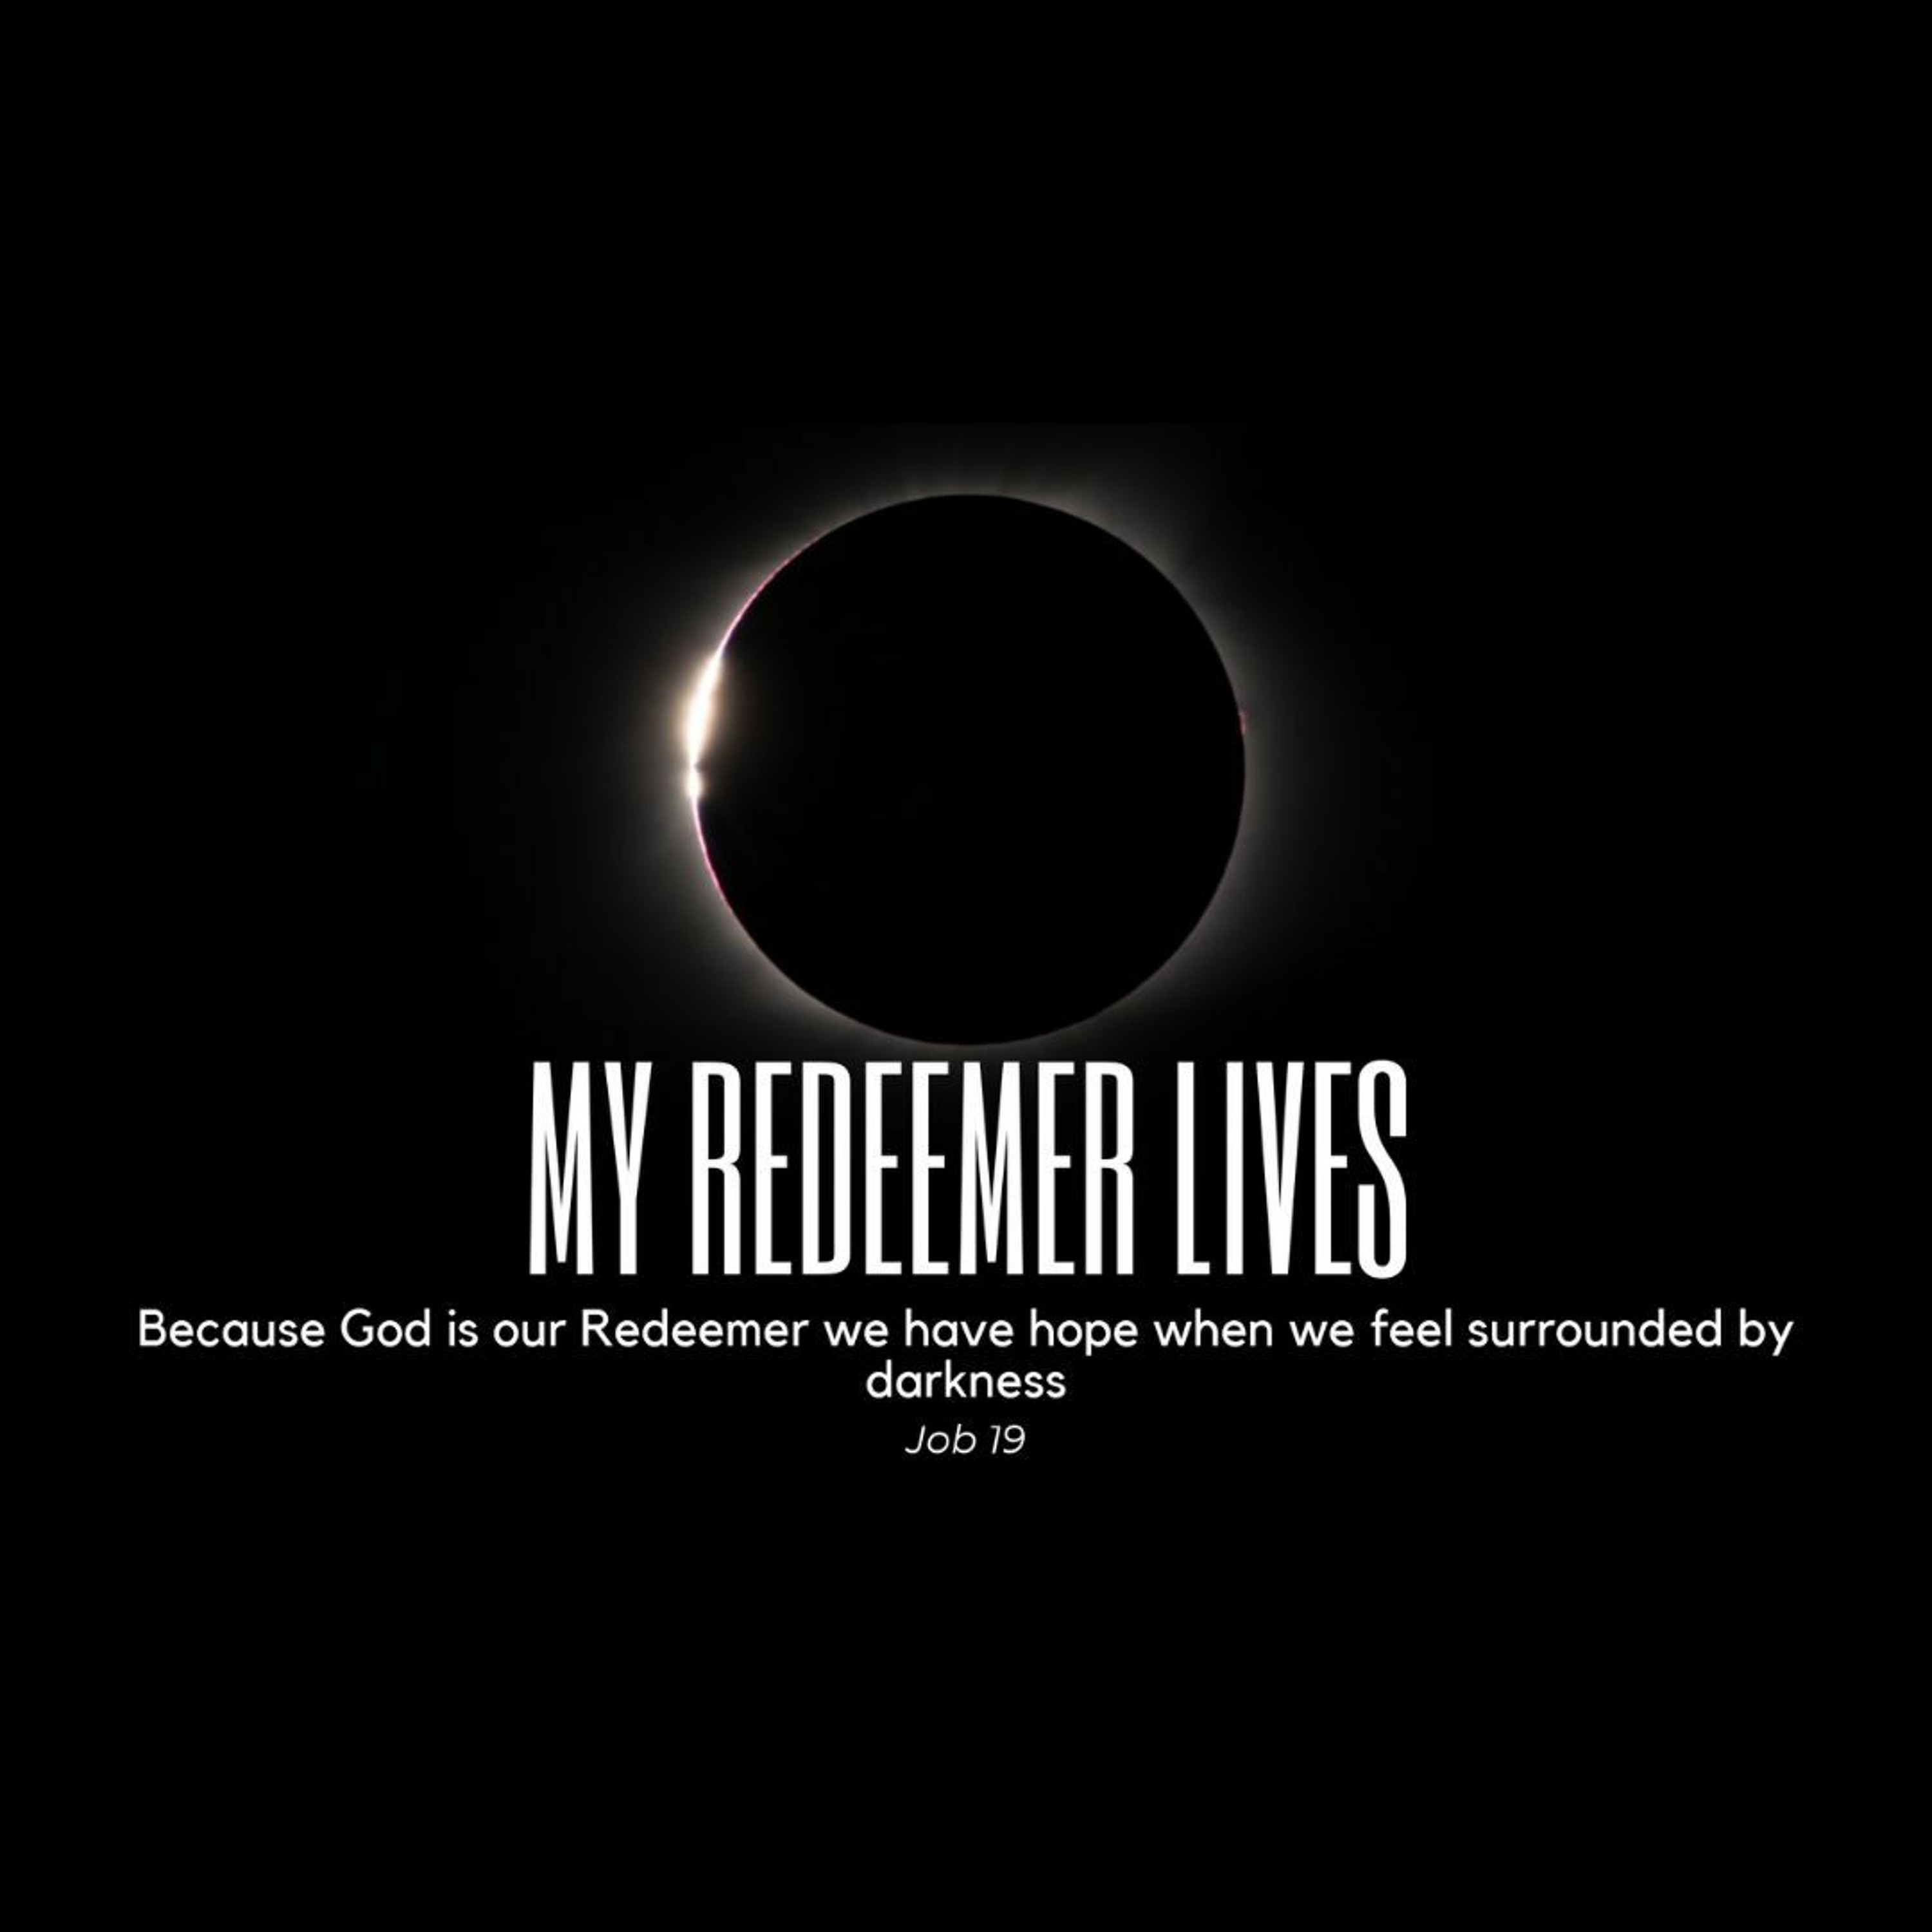 My Redeemer Lives (Job 19)